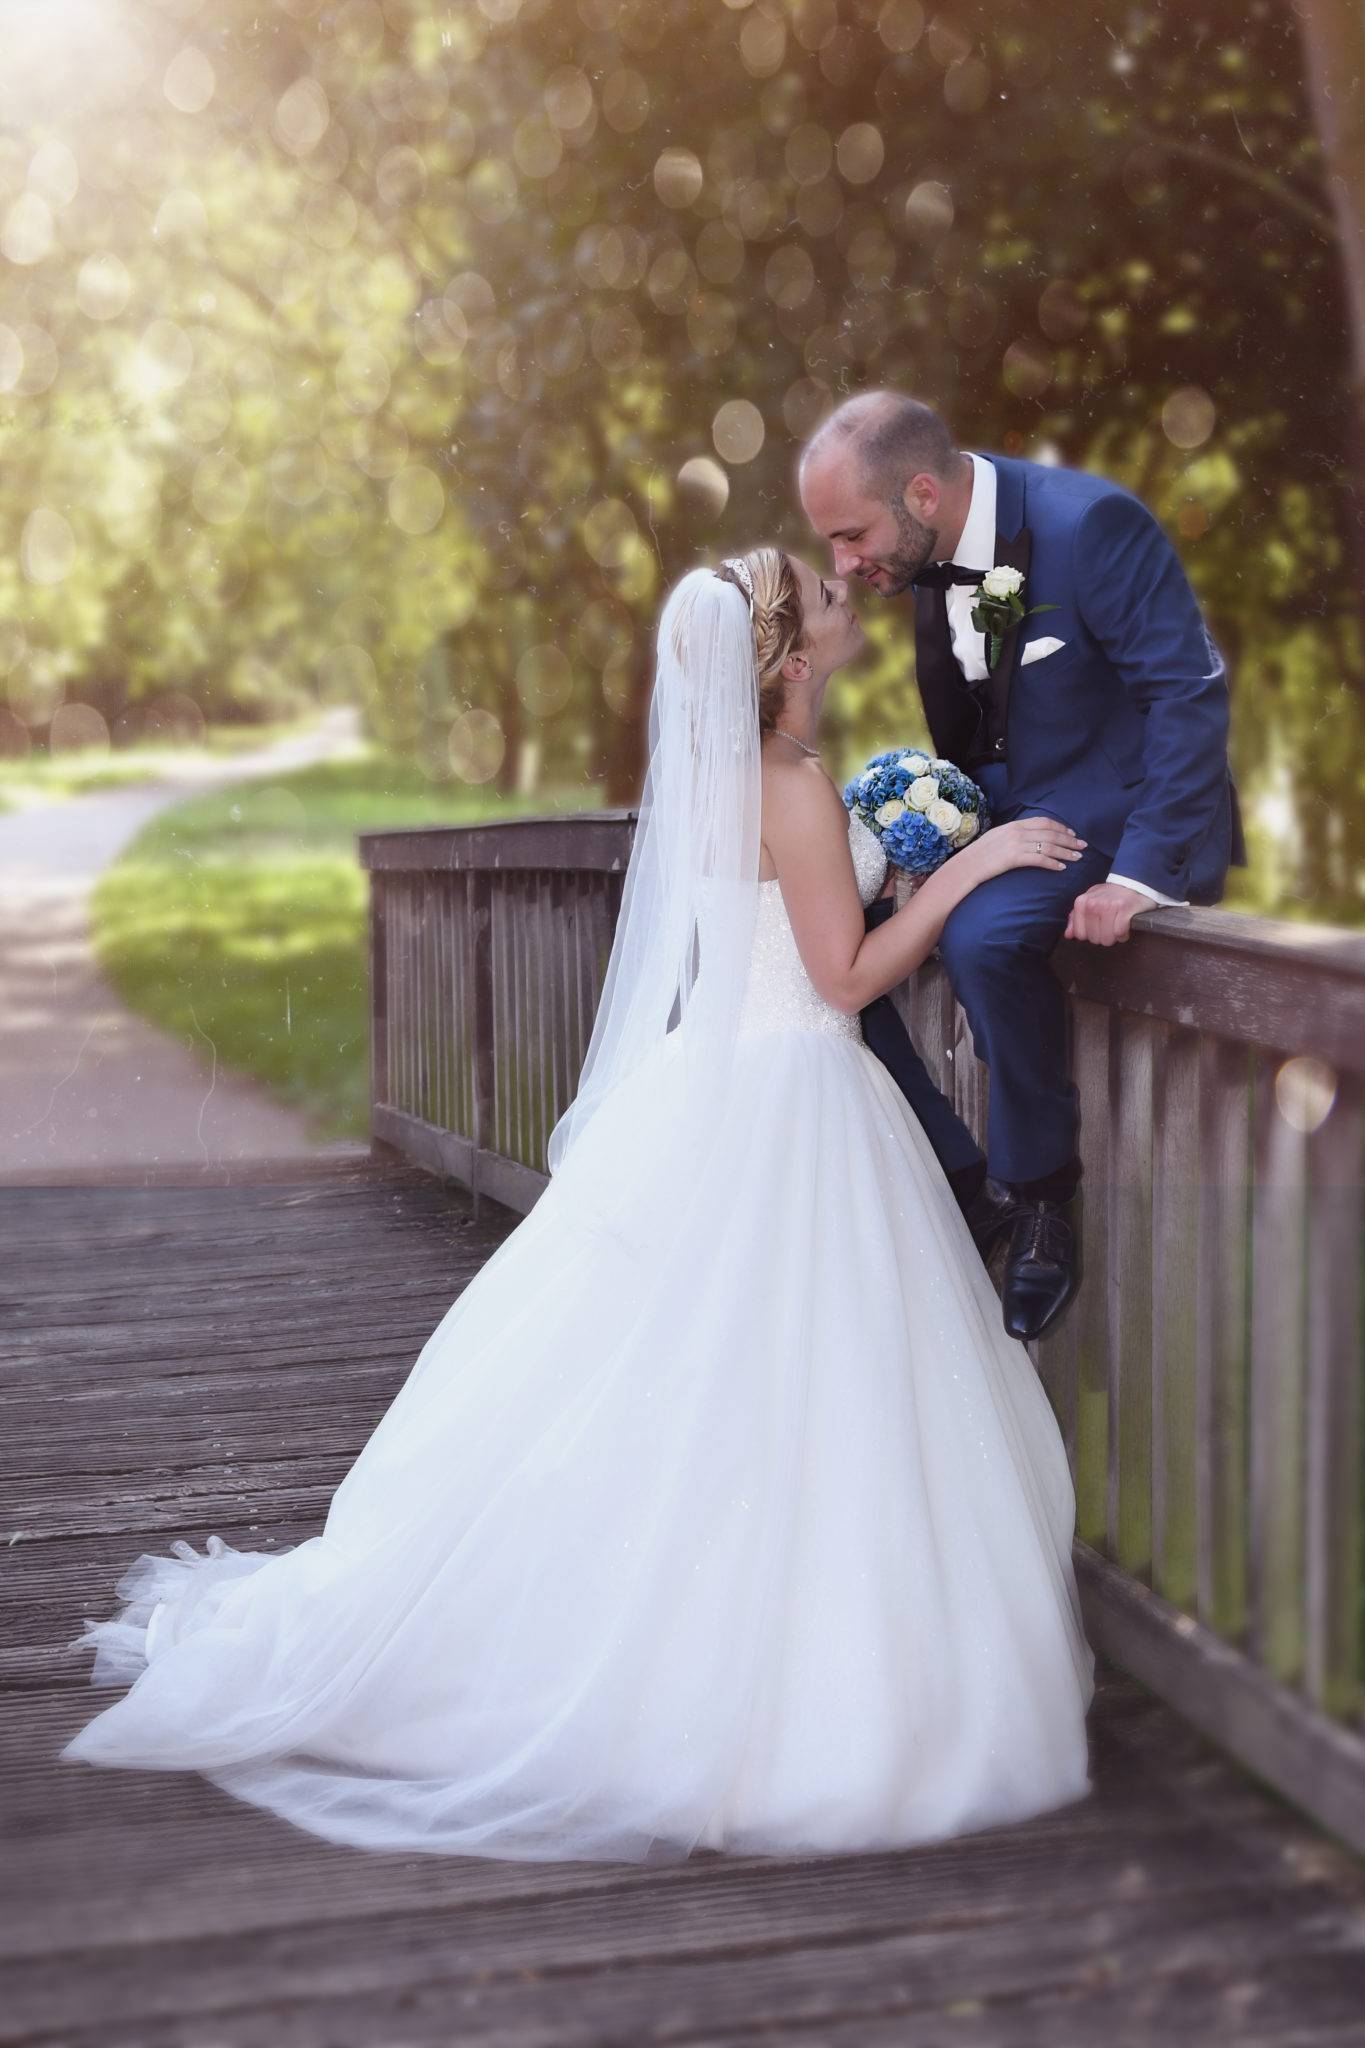 Brautpaar Fotoshooting auf einer Holbrücke mit Kuss